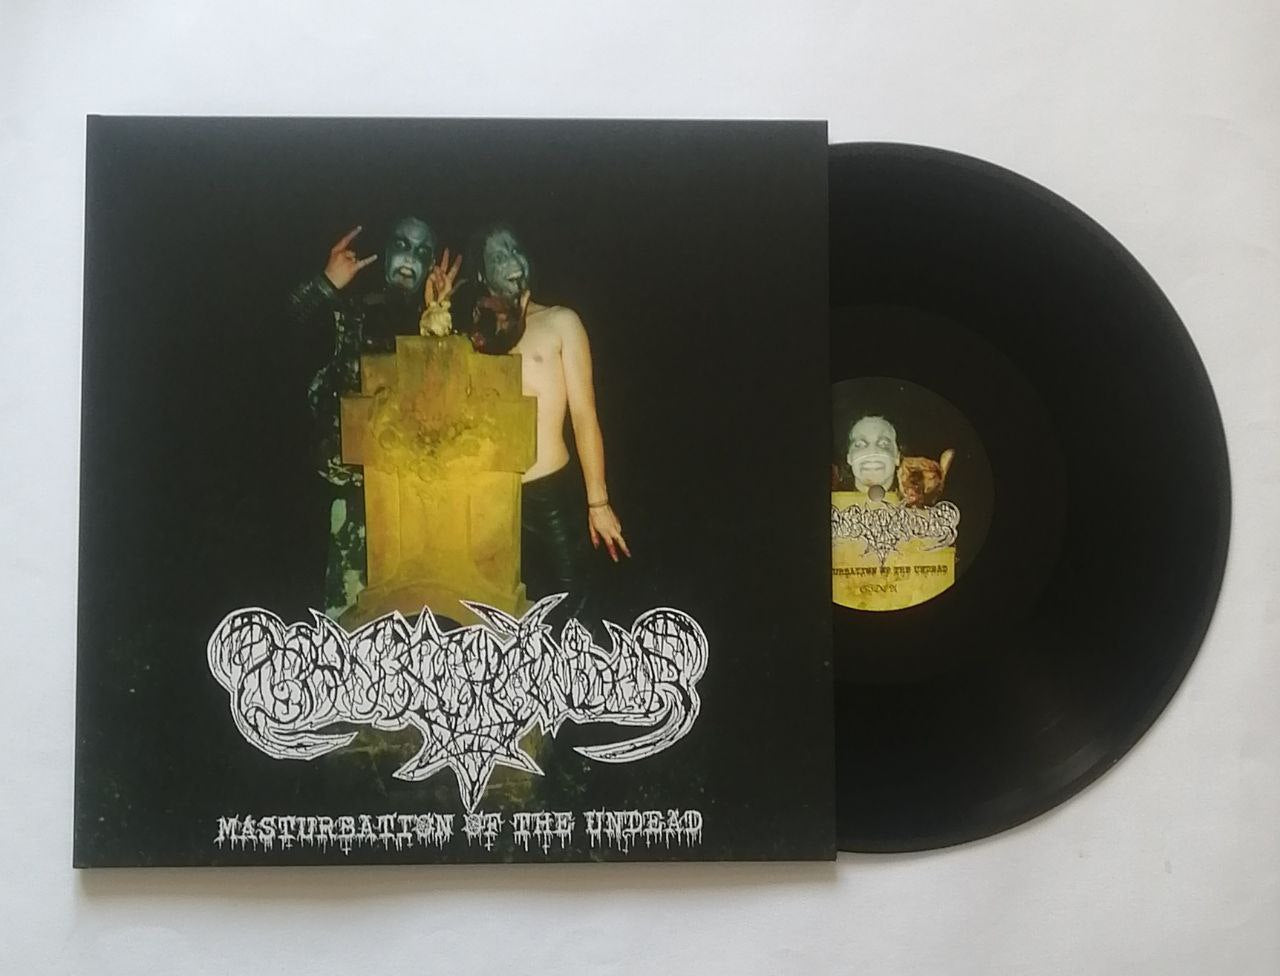 Grabschänder (Ger) "Masturbation of the Undead" - 12" LP ***New in Stock***